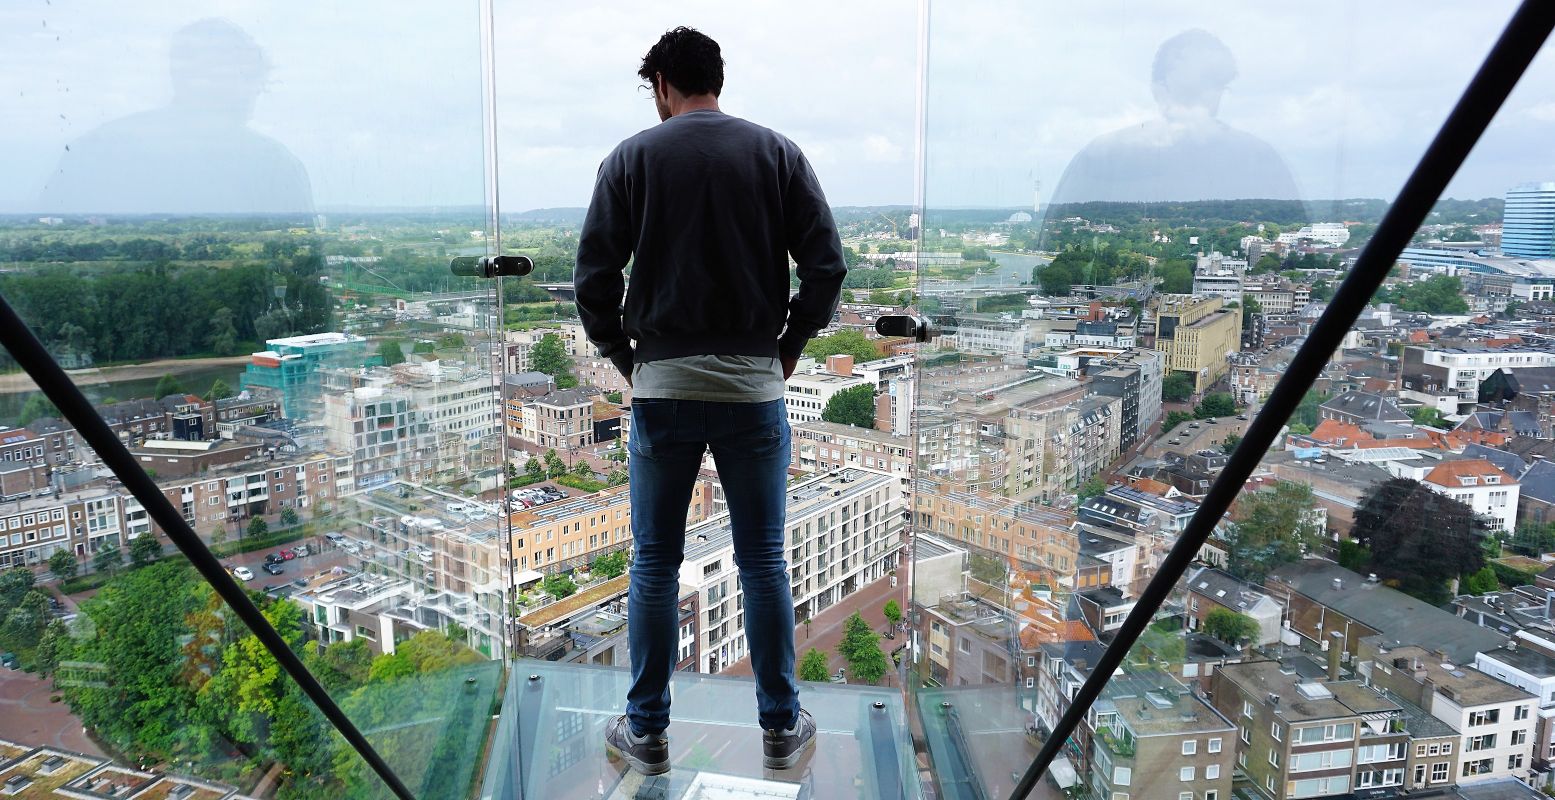 De glazen balkons zijn een belevenis: op 60 meter hoogte ligt Arnhem letterlijk onder je voeten. Foto: DagjeWeg.NL